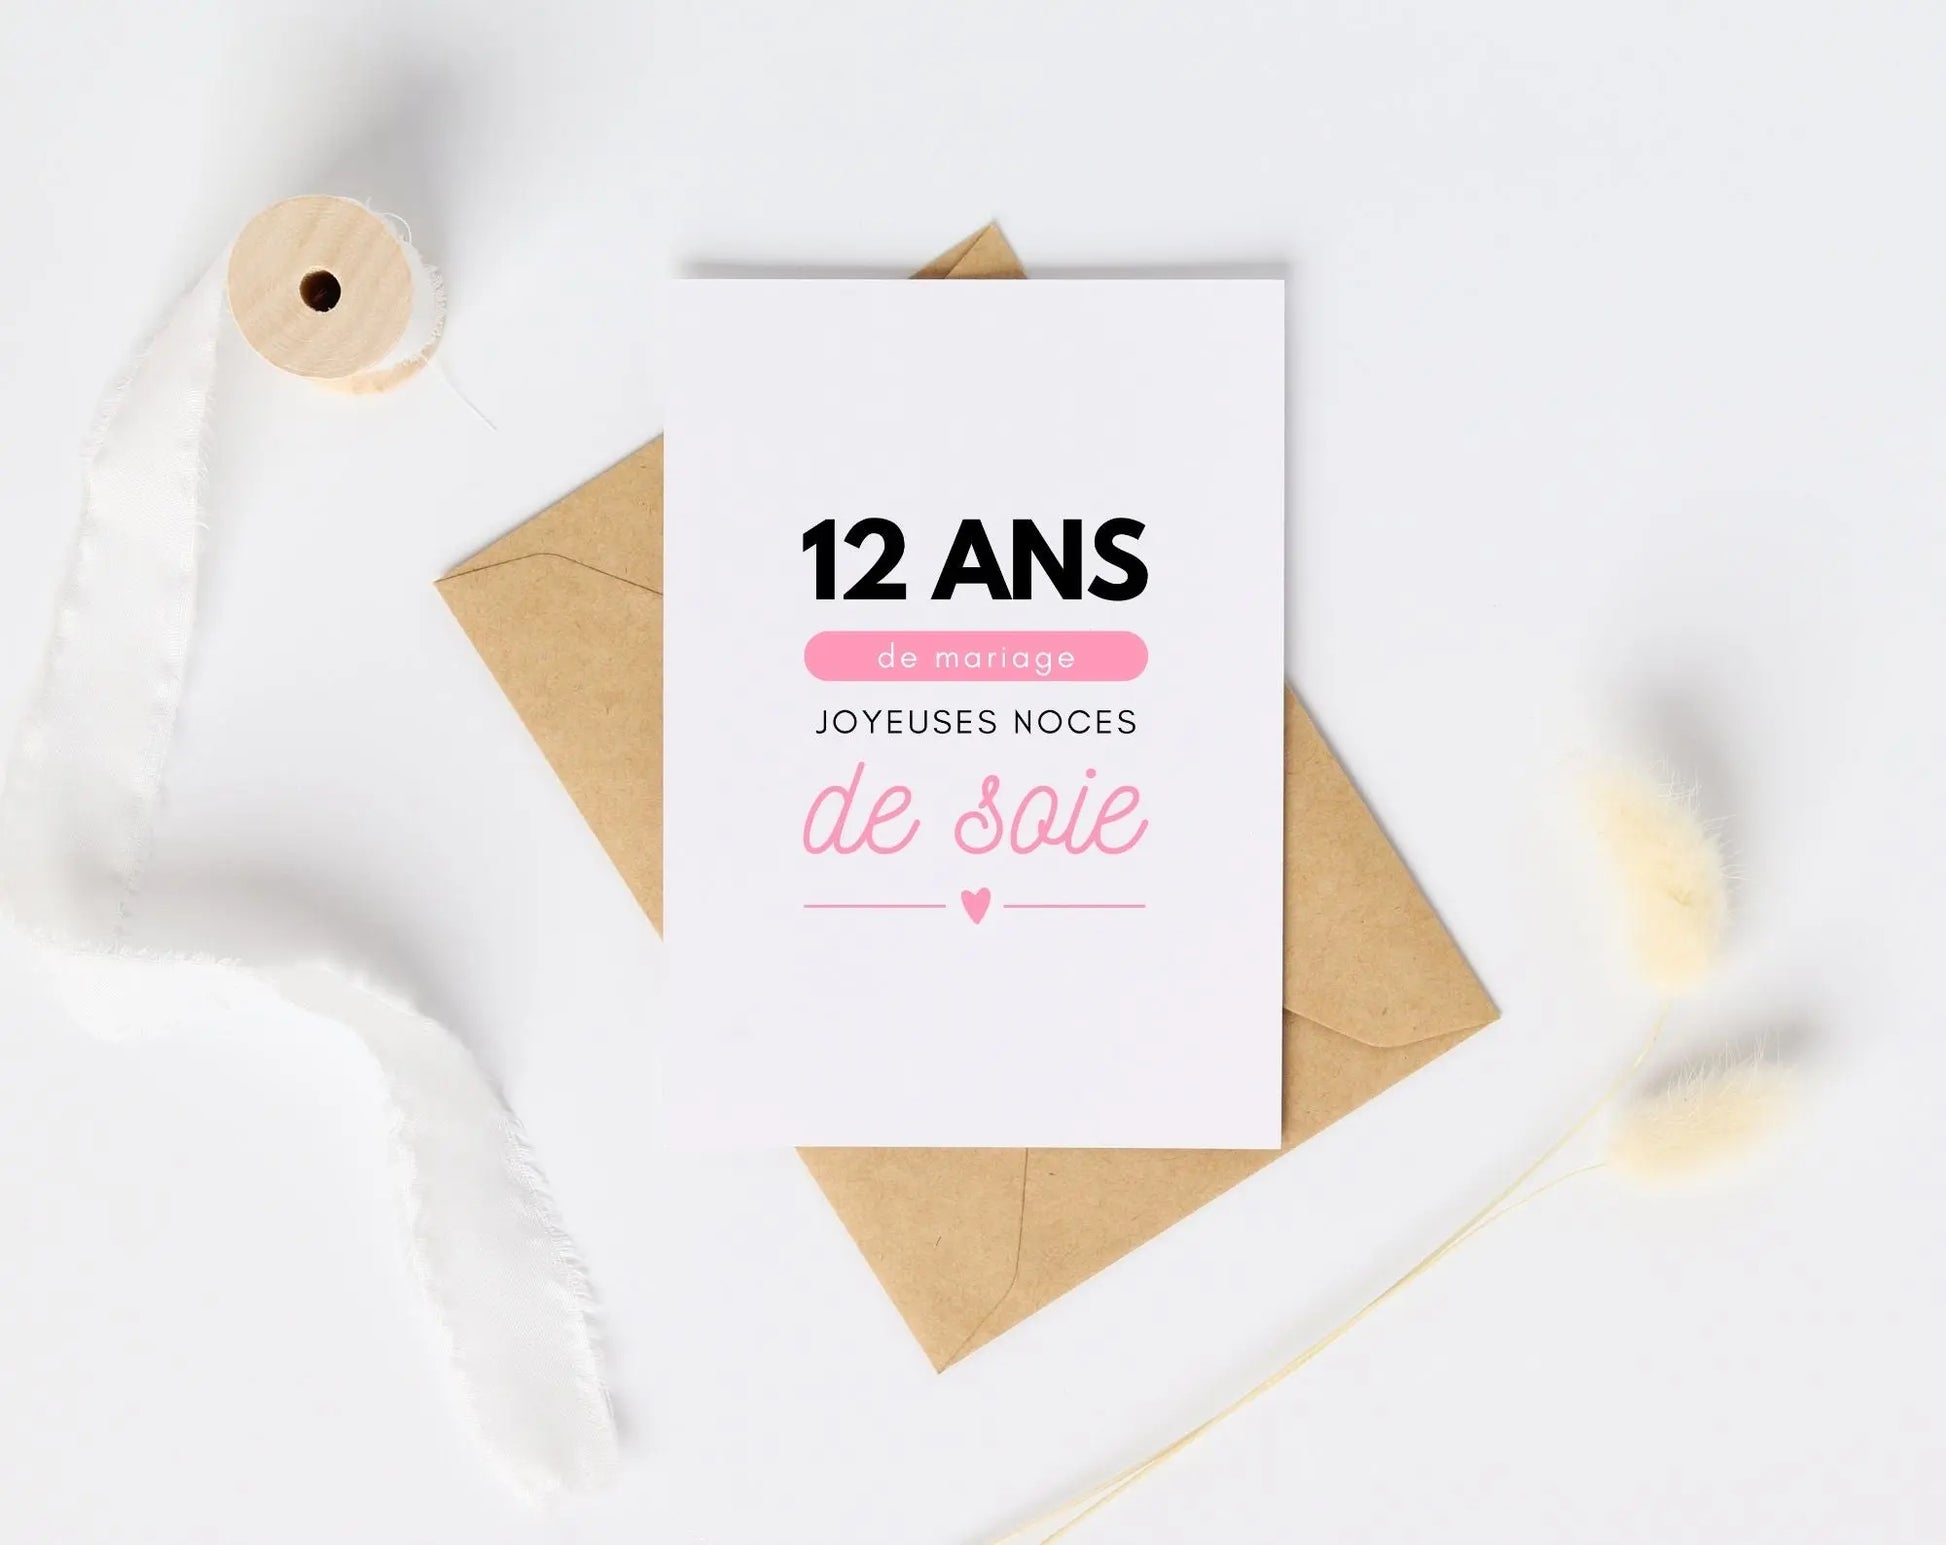 12 ans de mariage Affiche Noces de soie - Cadeau anniversaire de mariage - FLTMfrance